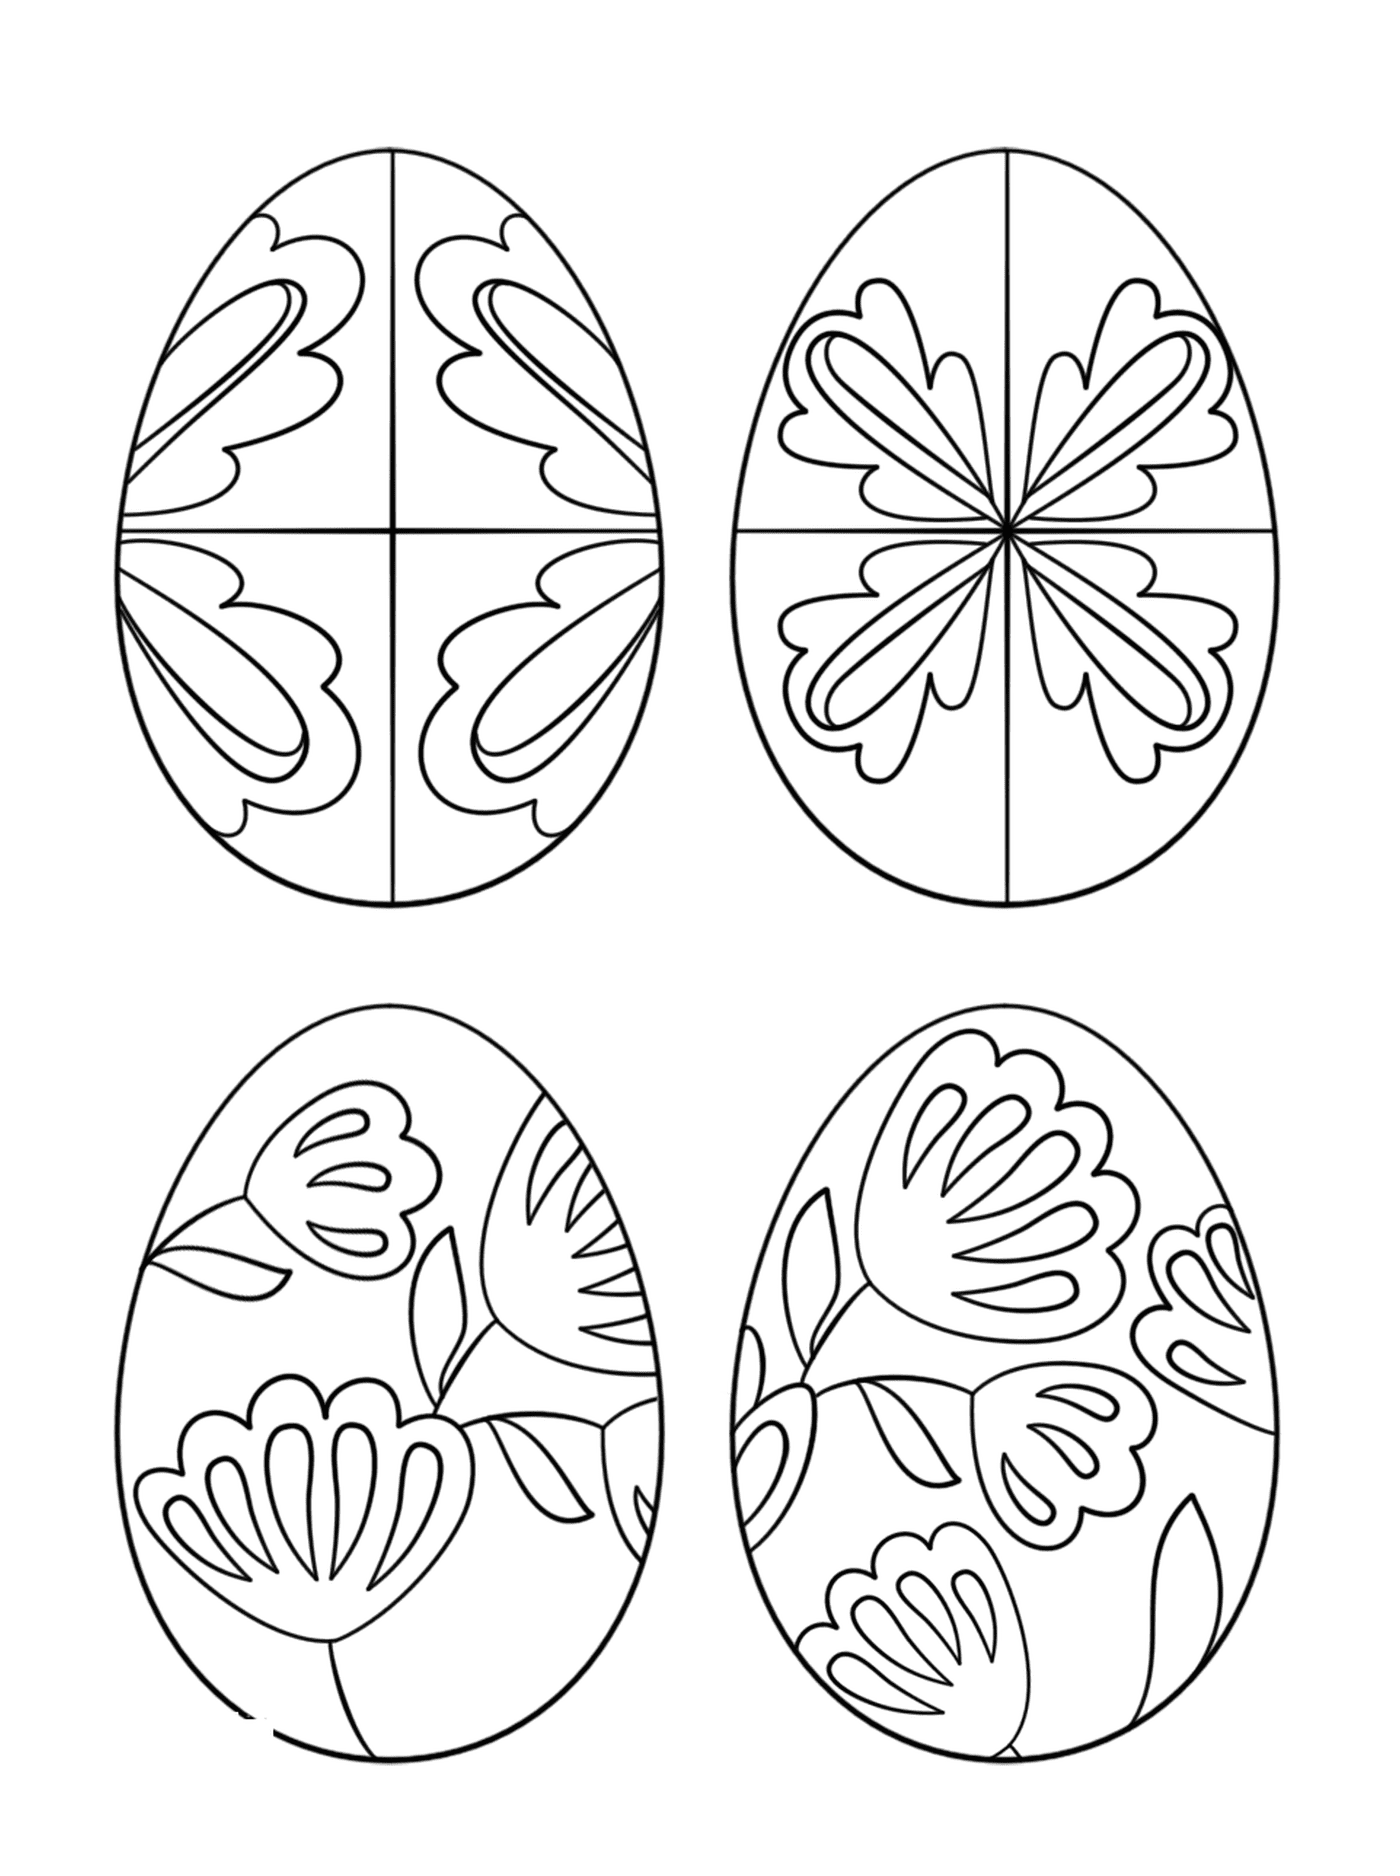  鸡蛋,一套复活节鸡蛋 装饰着不同模式的复活节鸡蛋 